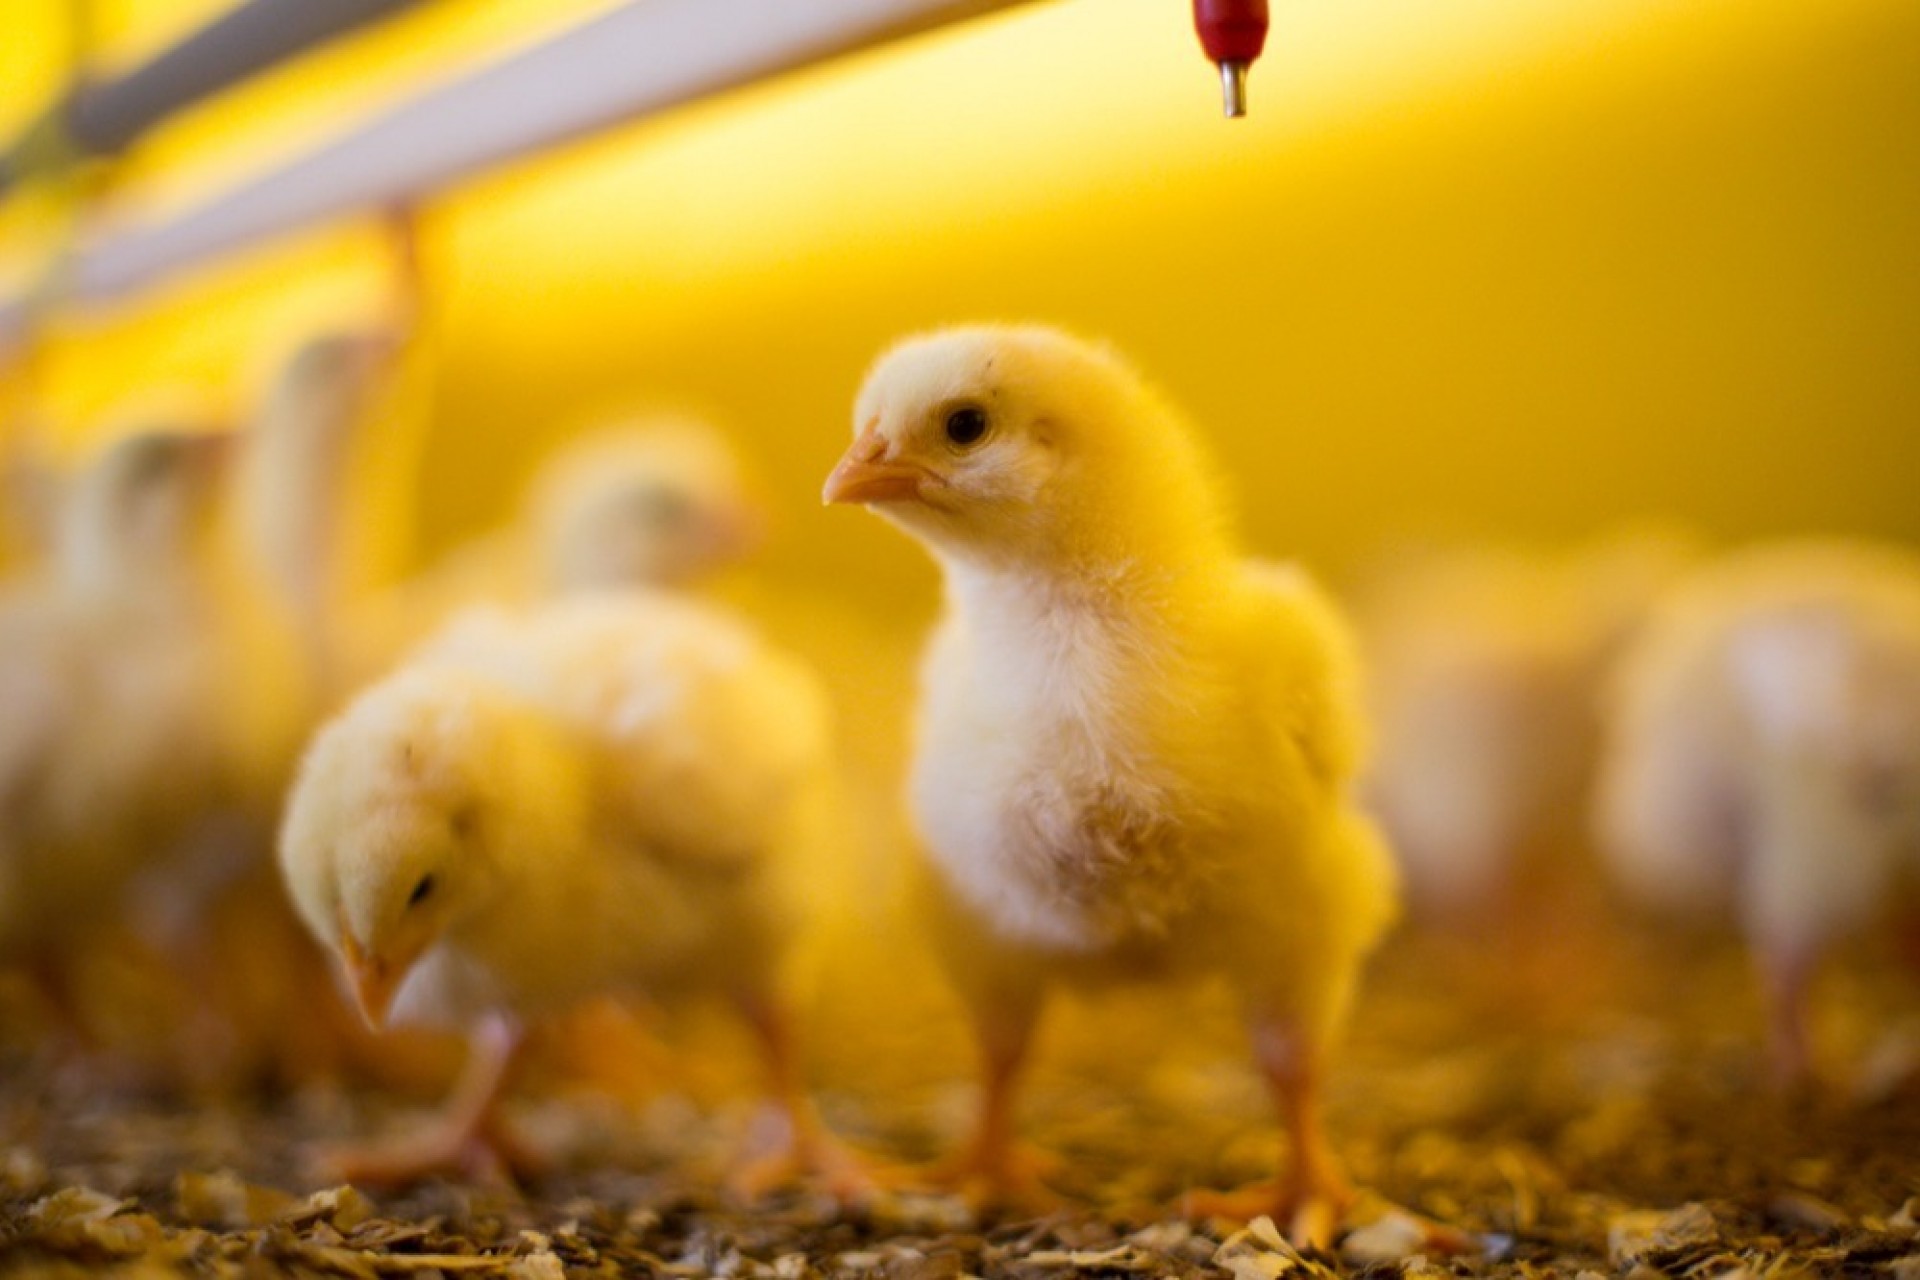 Biosseguridade é condição essencial para saúde na avicultura